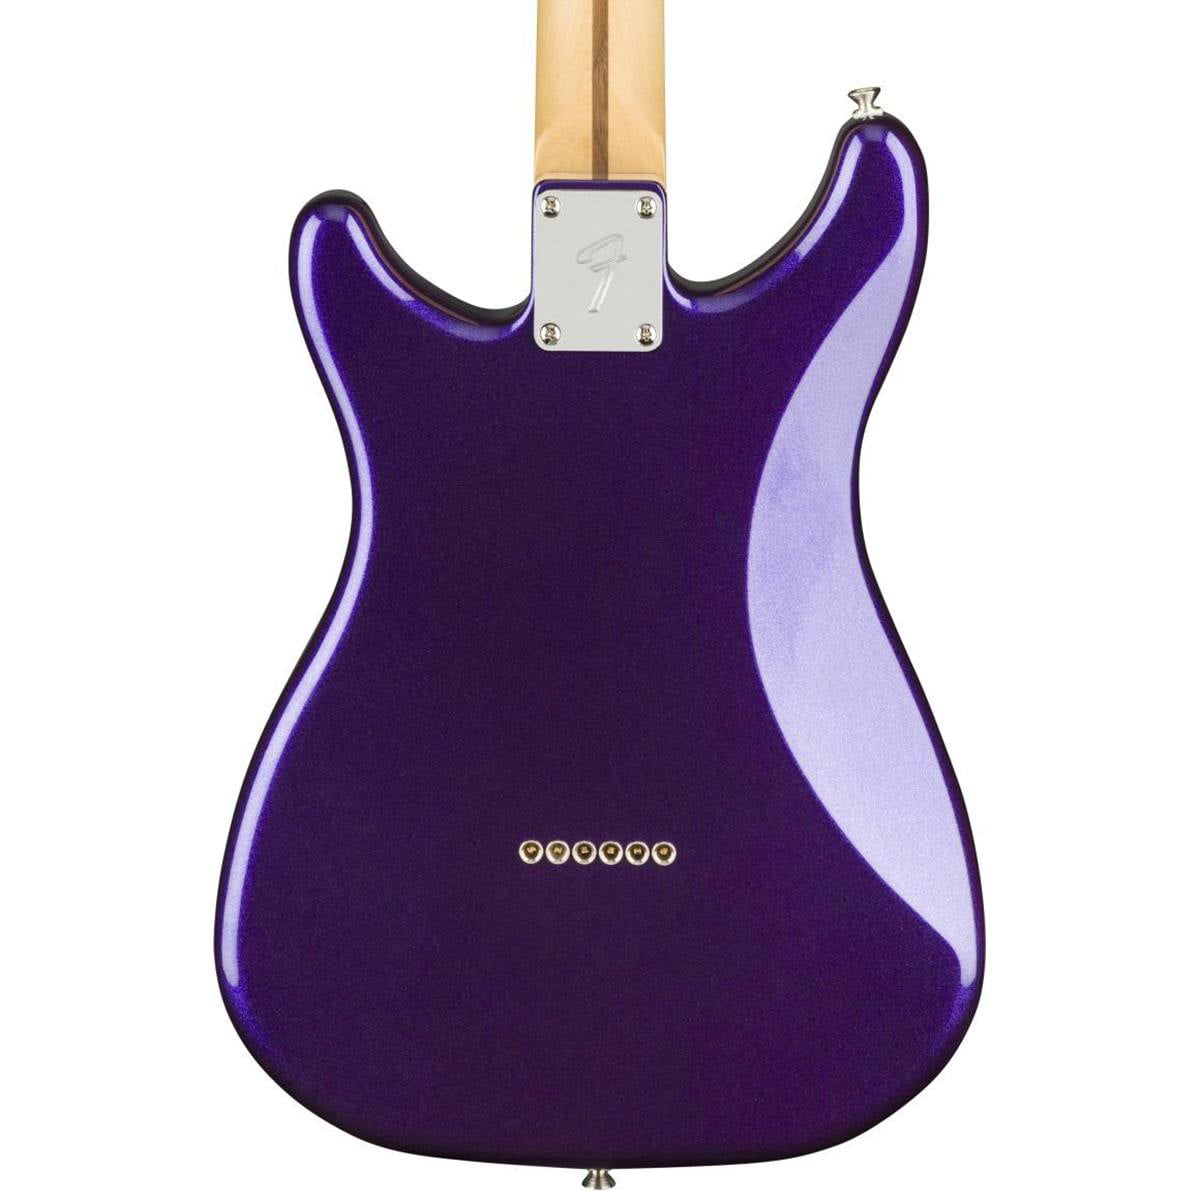 Fender Player Lead III Electric Guitar (Purple Metallic, Pau Ferro  Fretboard)